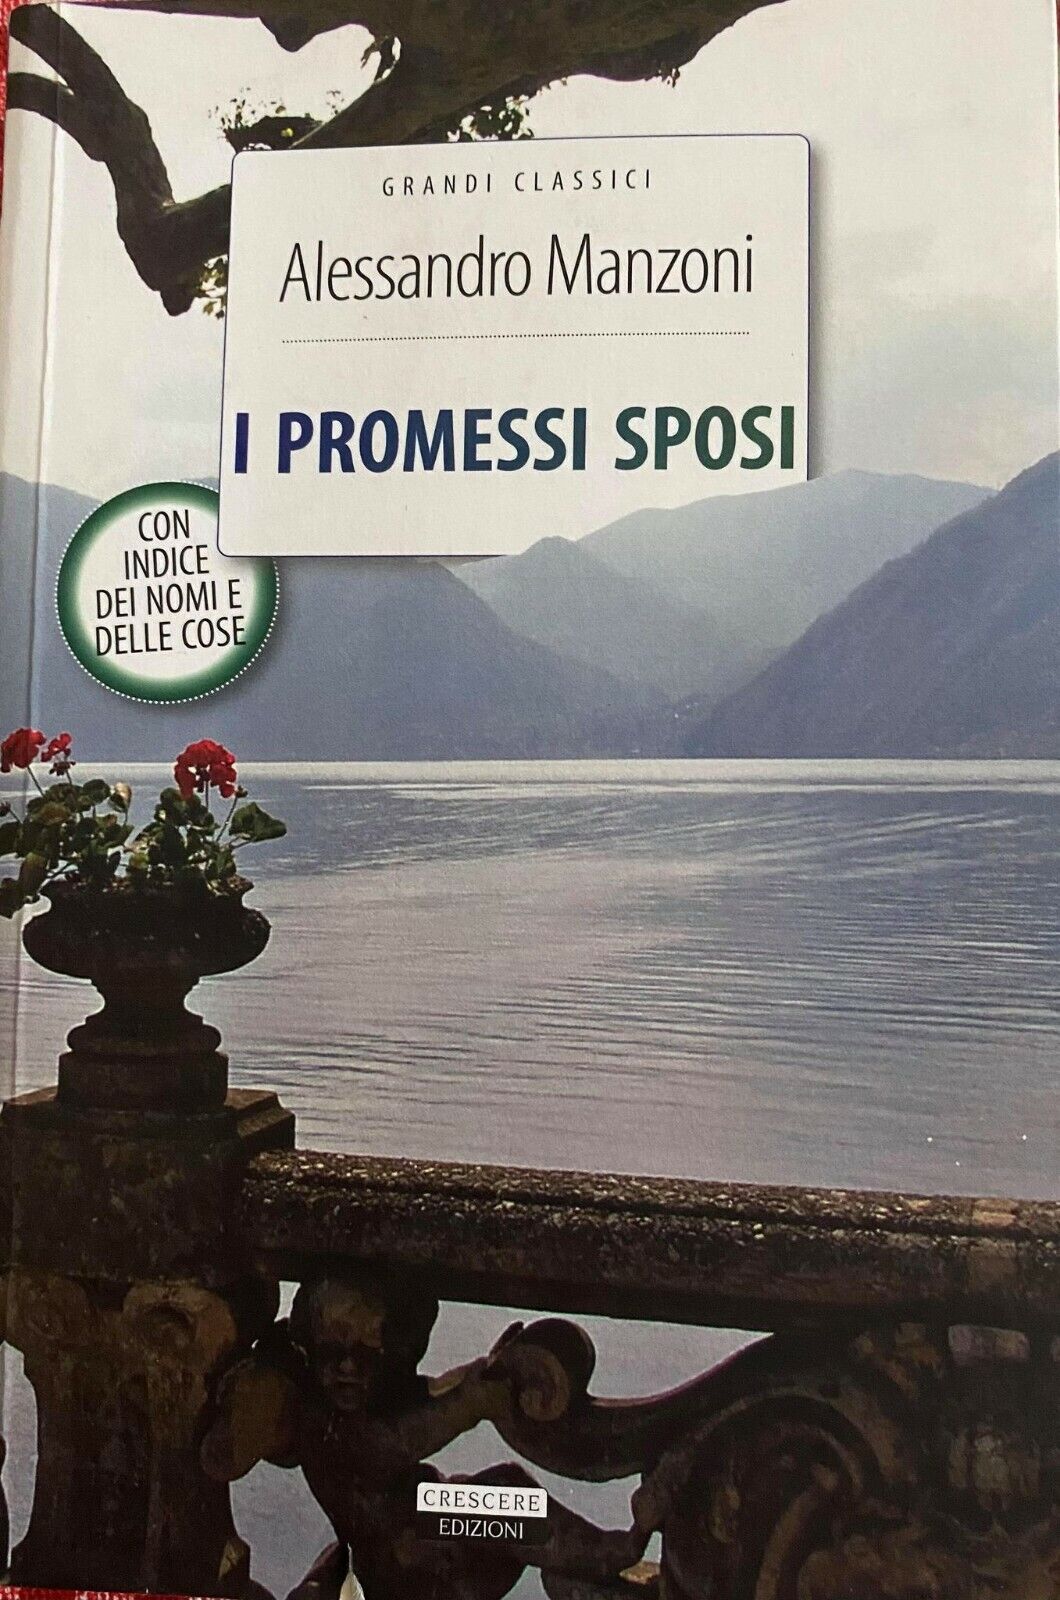 I promessi sposi - Alessandro Manzoni - Crescere edizioni - 2016 - M